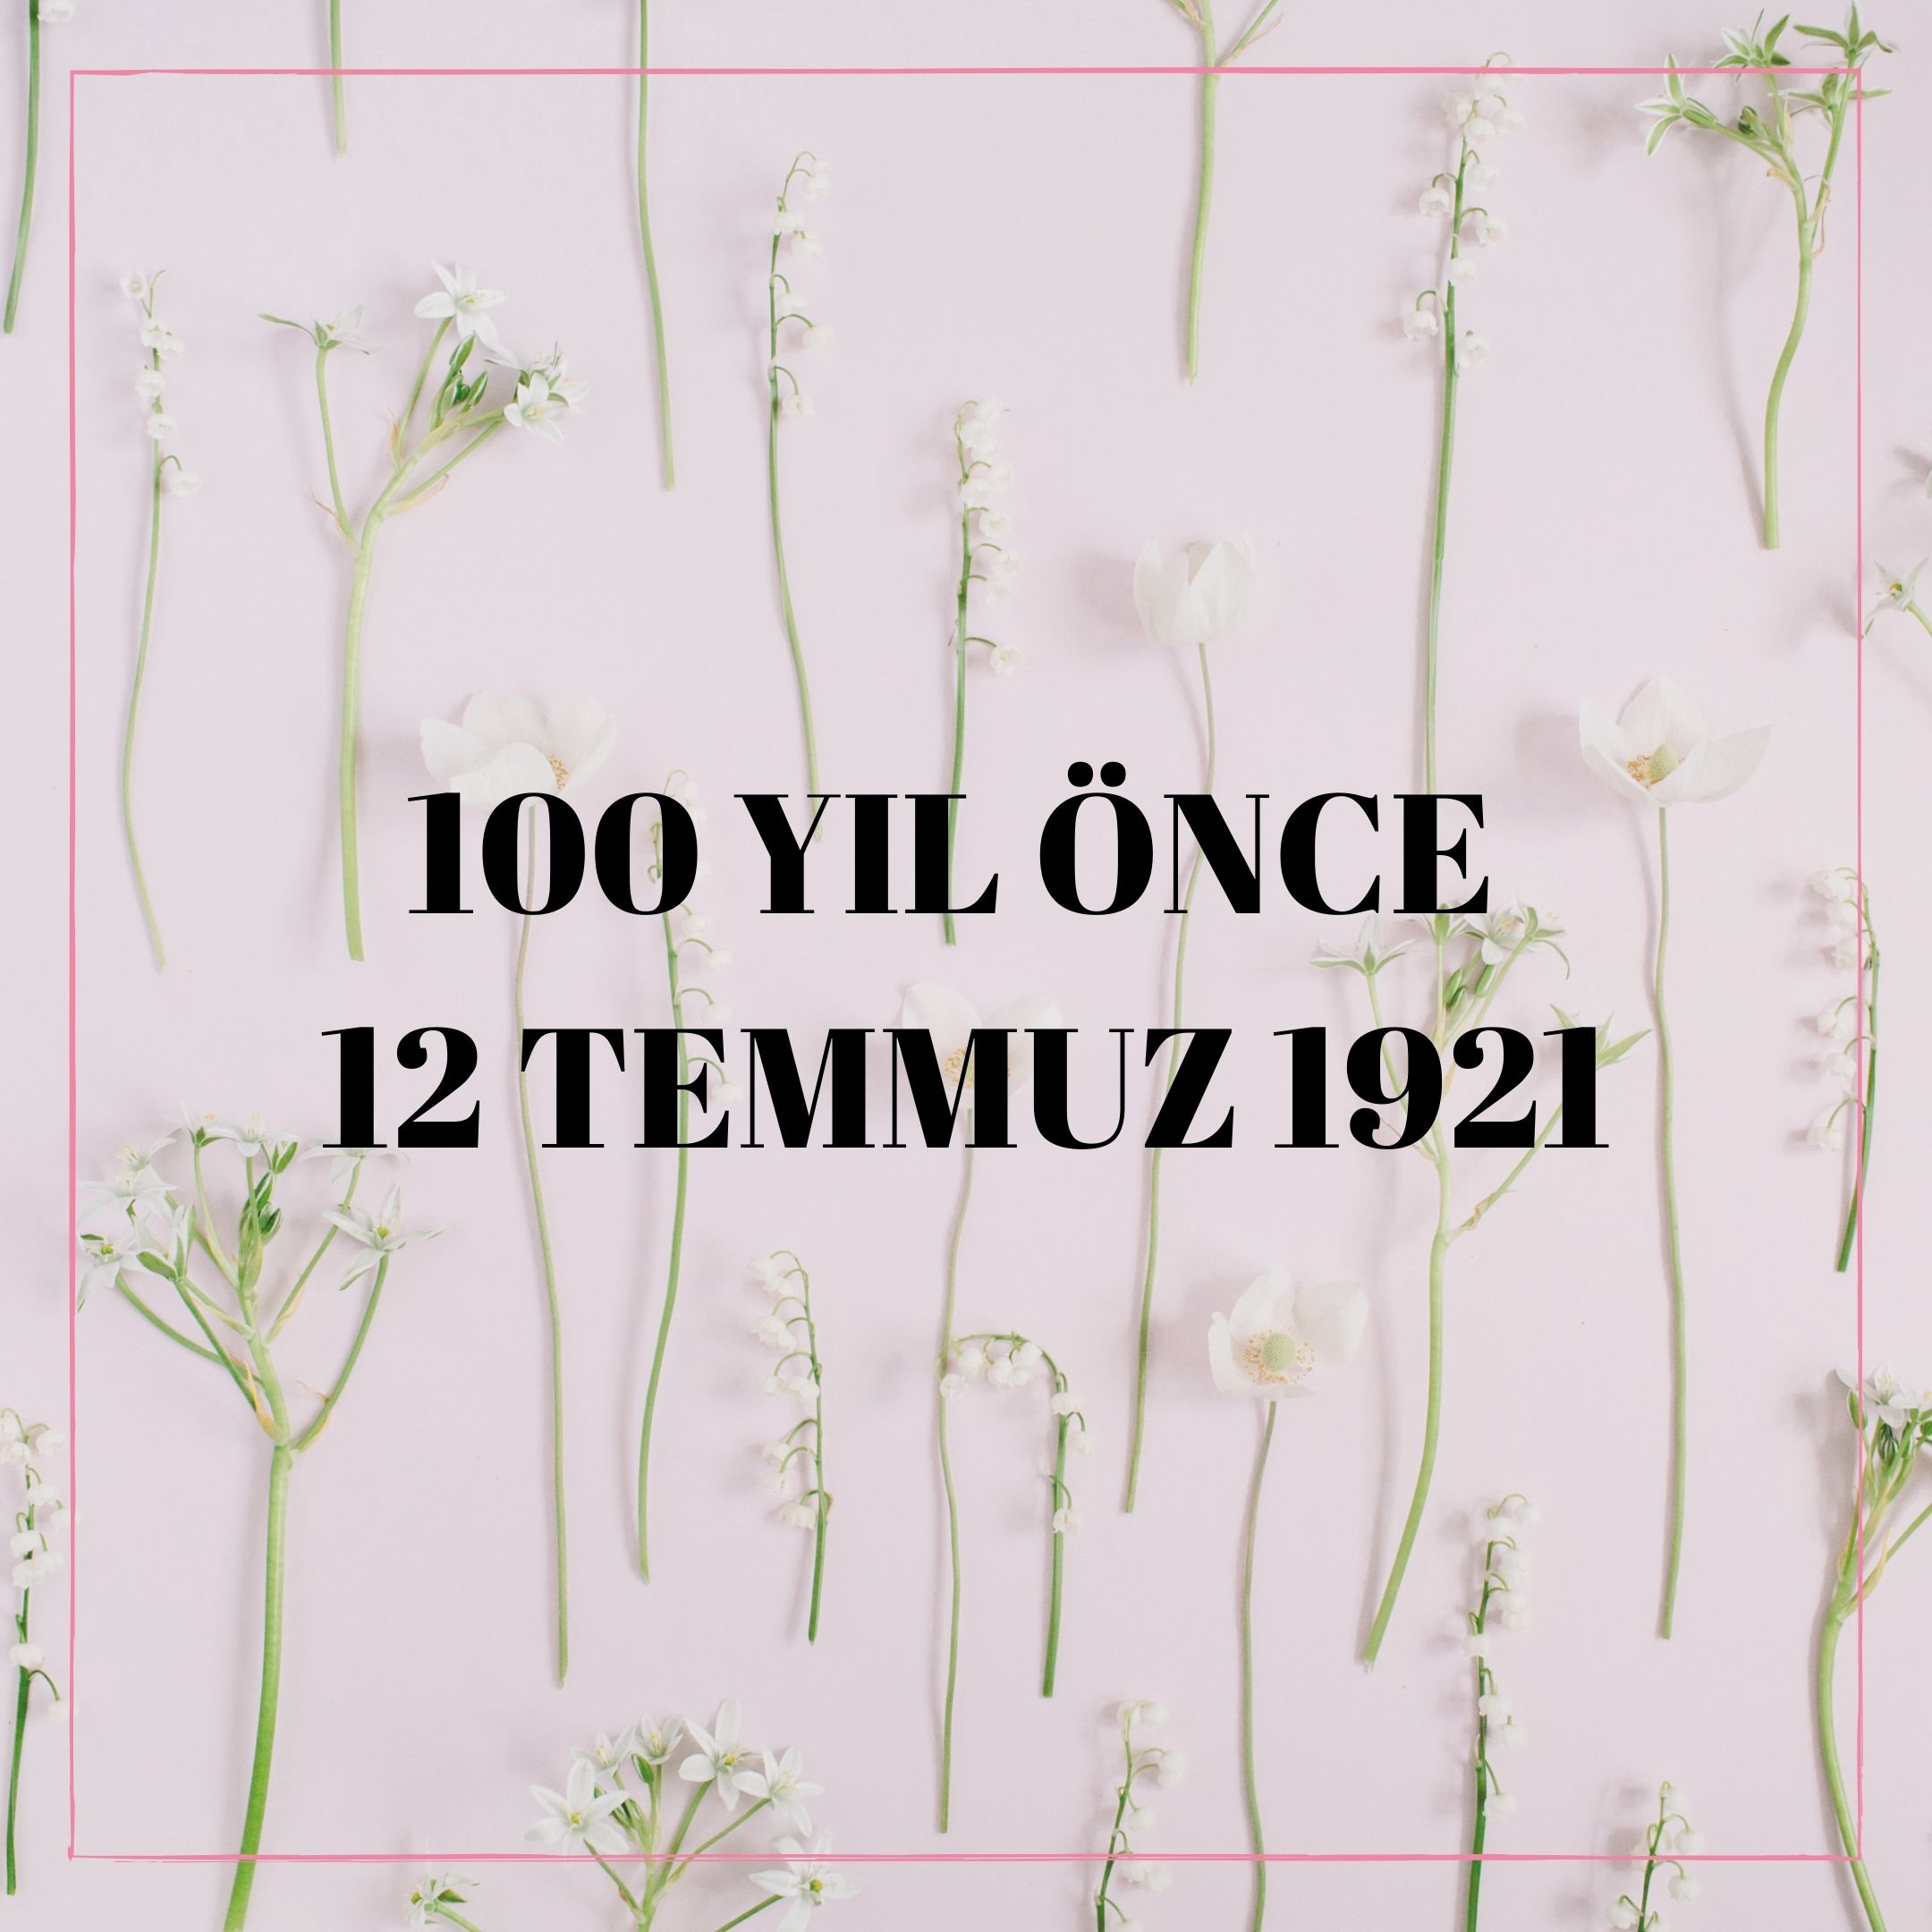 100 YIL ÖNCE 12 TEMMUZ 1921